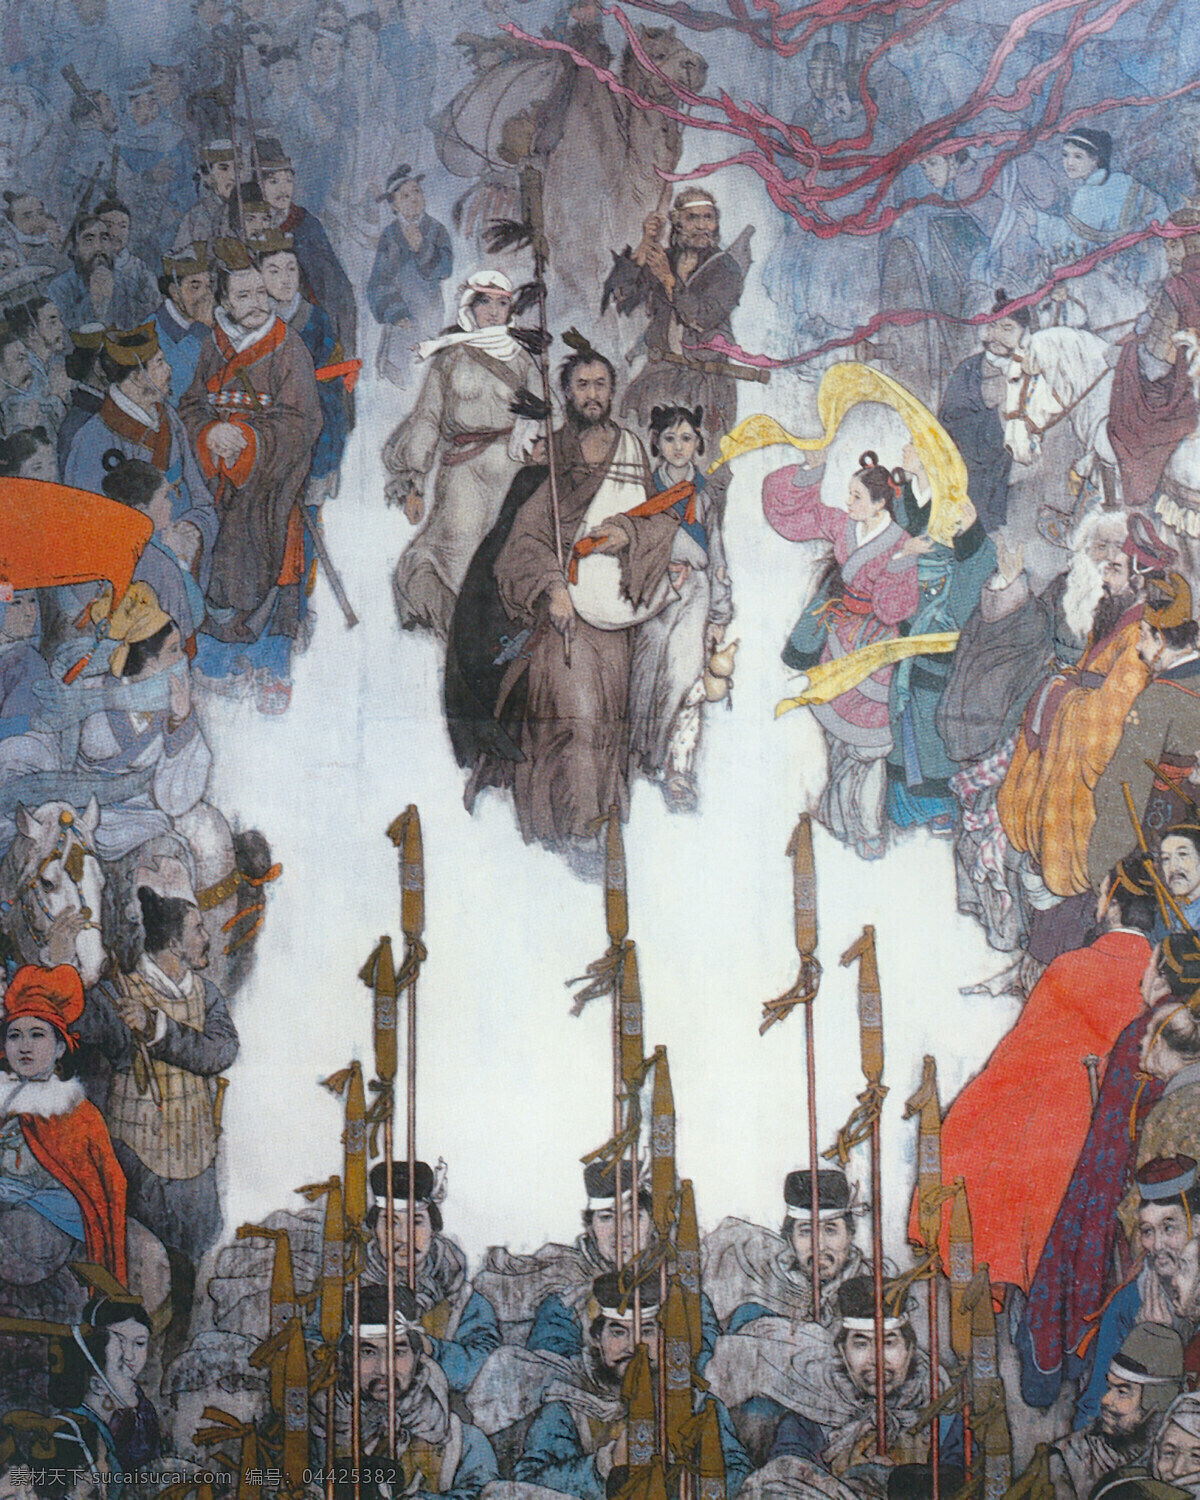 张骞回京图 张骞 人民英雄 出使节杖 民众 马 中国 现代 人物篇 文化艺术 绘画书法